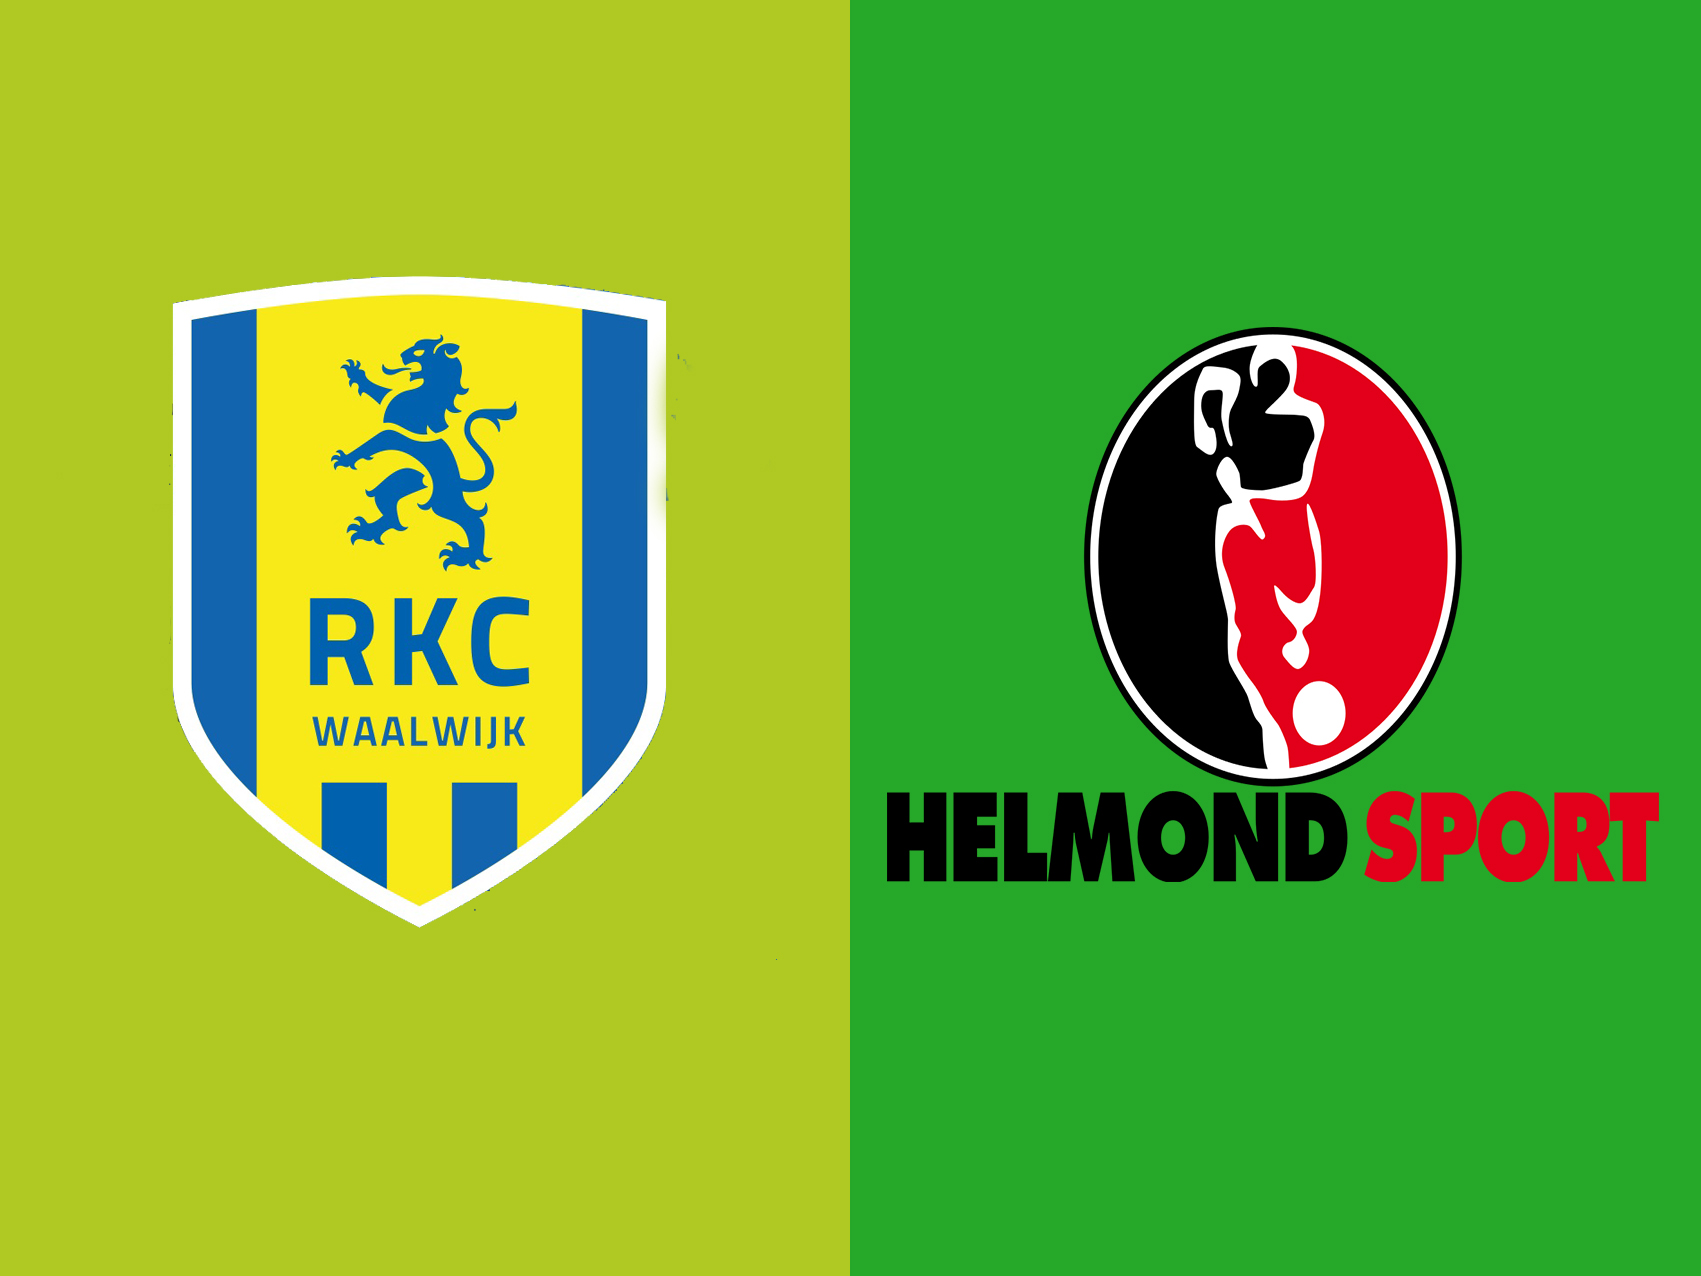 rkc-waalwijk-vs-helmond-sport-–-tip-bong-da-23-3-2019 1